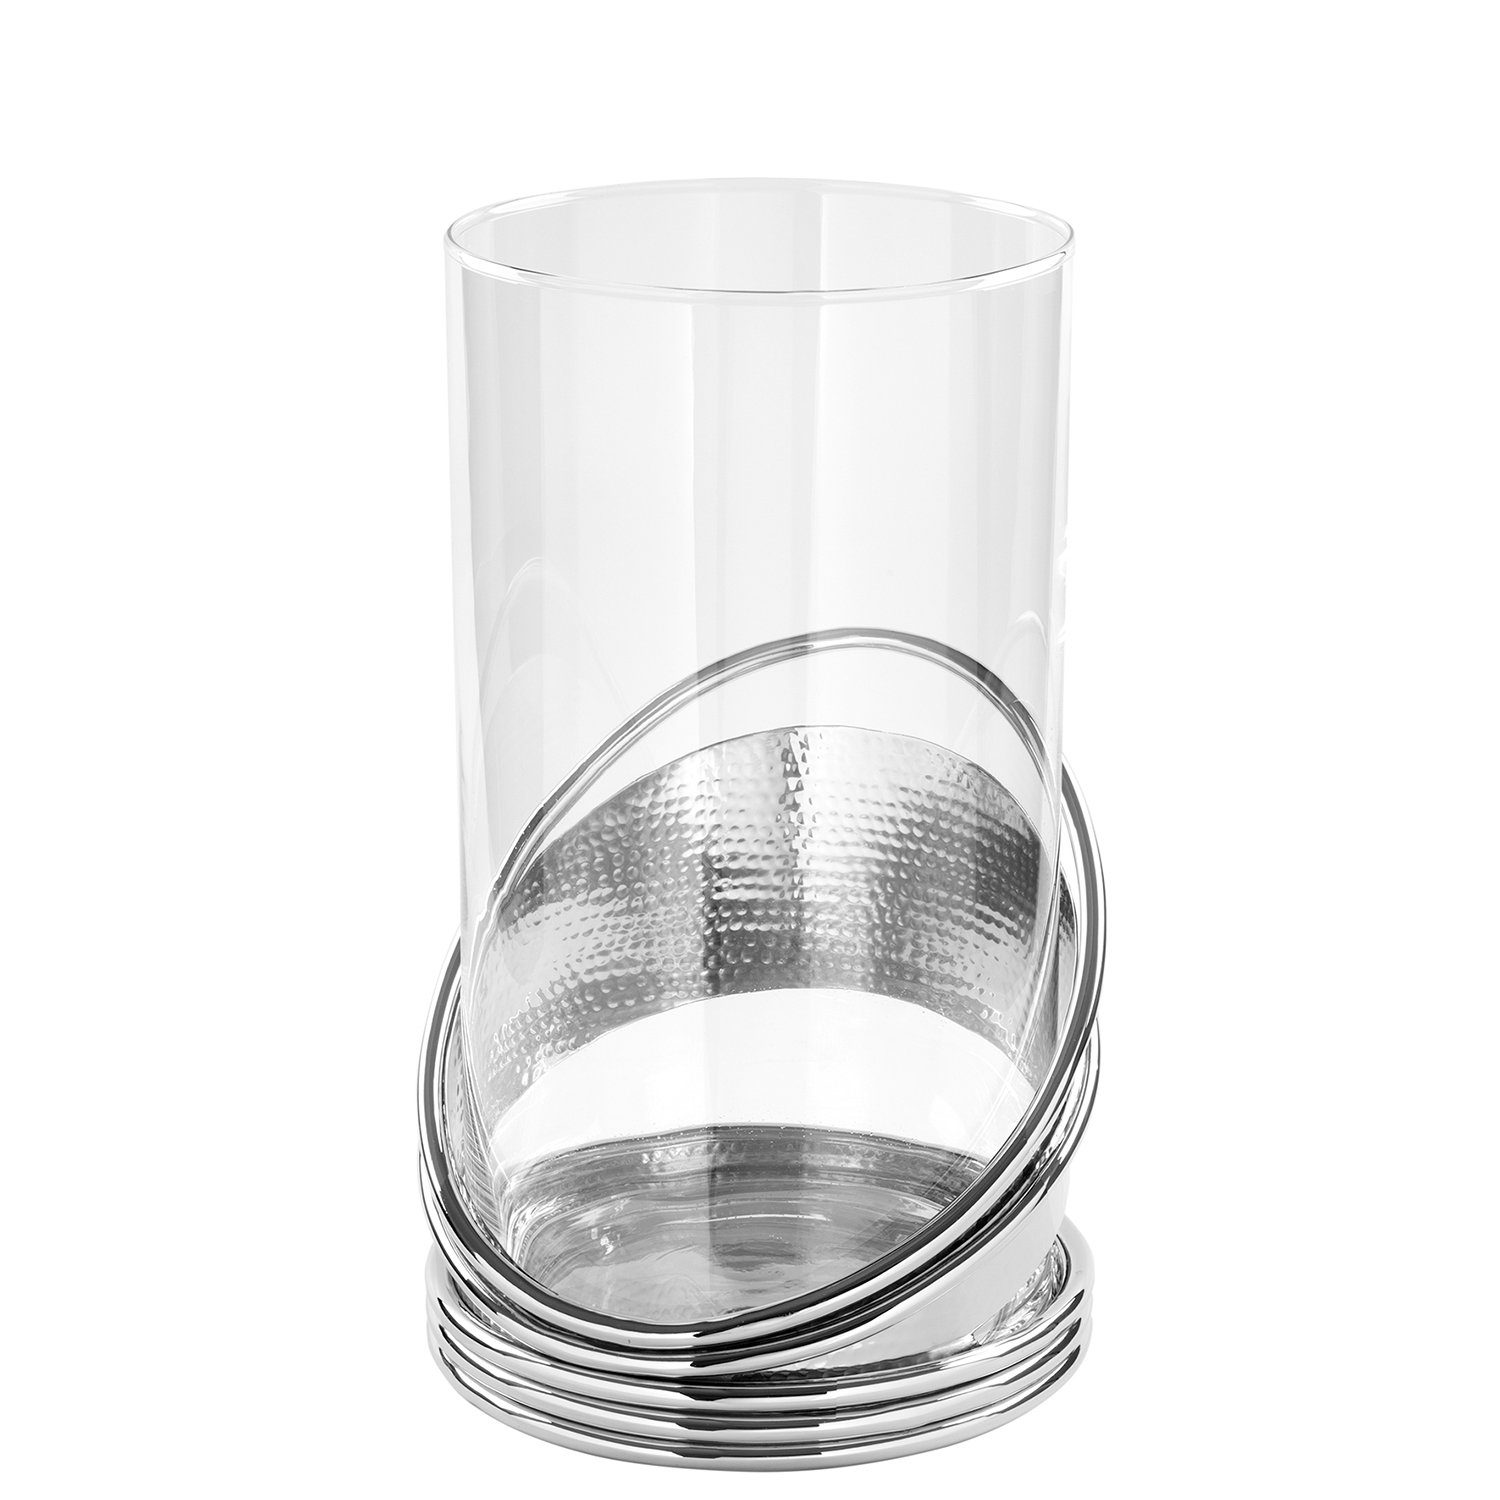 Fink Windlicht Windlicht COLETTE - silber - Aluminium / Glas - H.30cm x Ø 25,5cm (vernickelt - Aluminiumbasis mit Glaszylinder), vernickelt